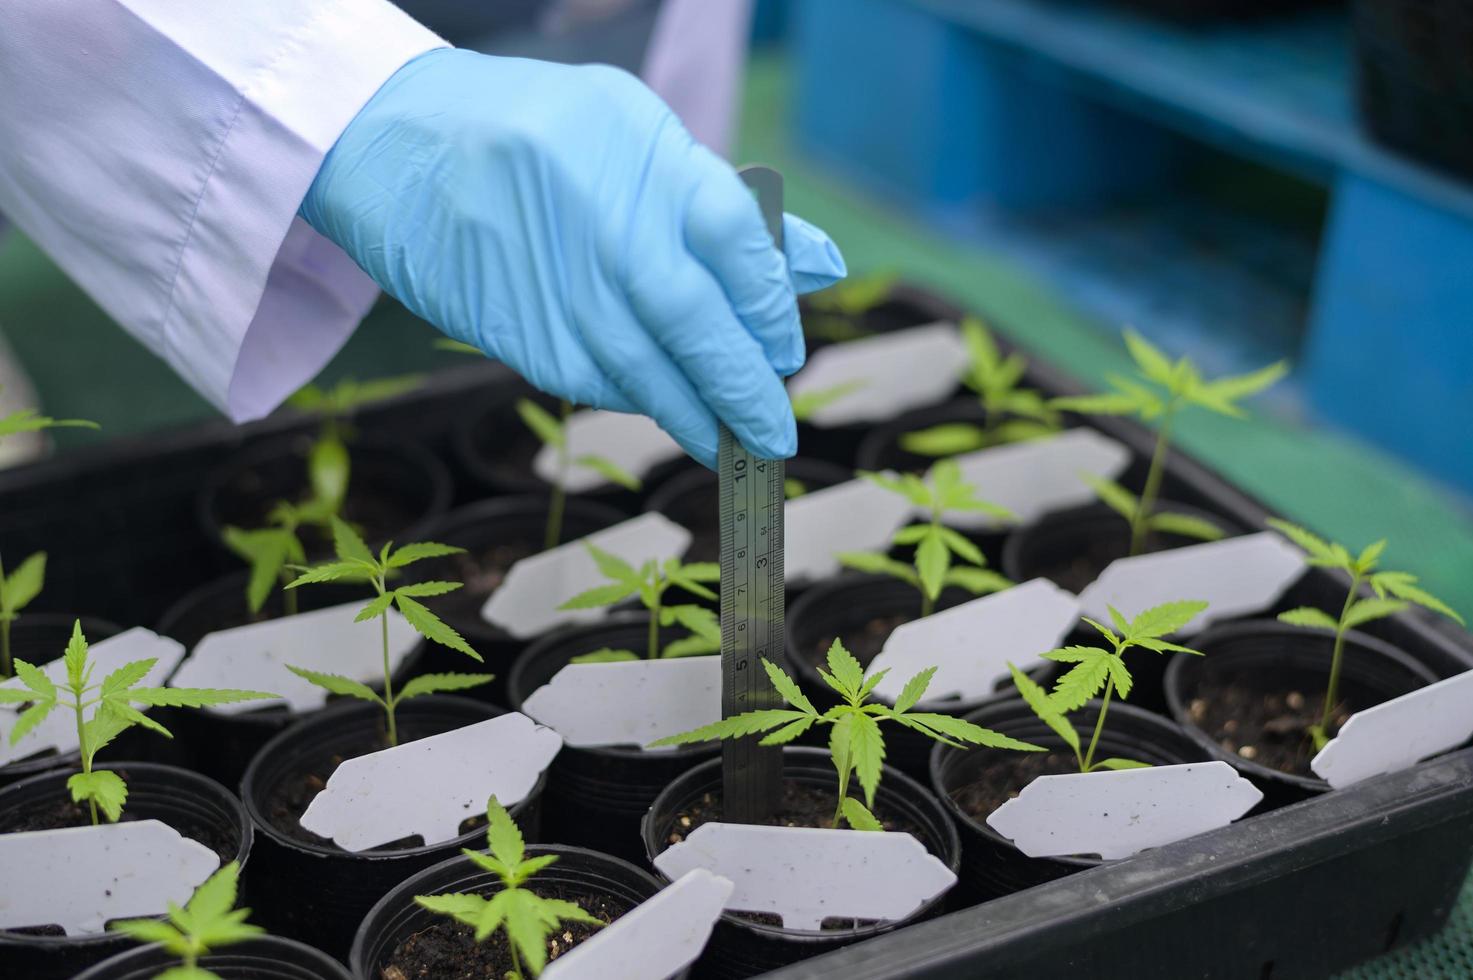 un científico que utiliza una regla para recopilar y analizar datos sobre plántulas de cannabis en una granja legalizada. foto